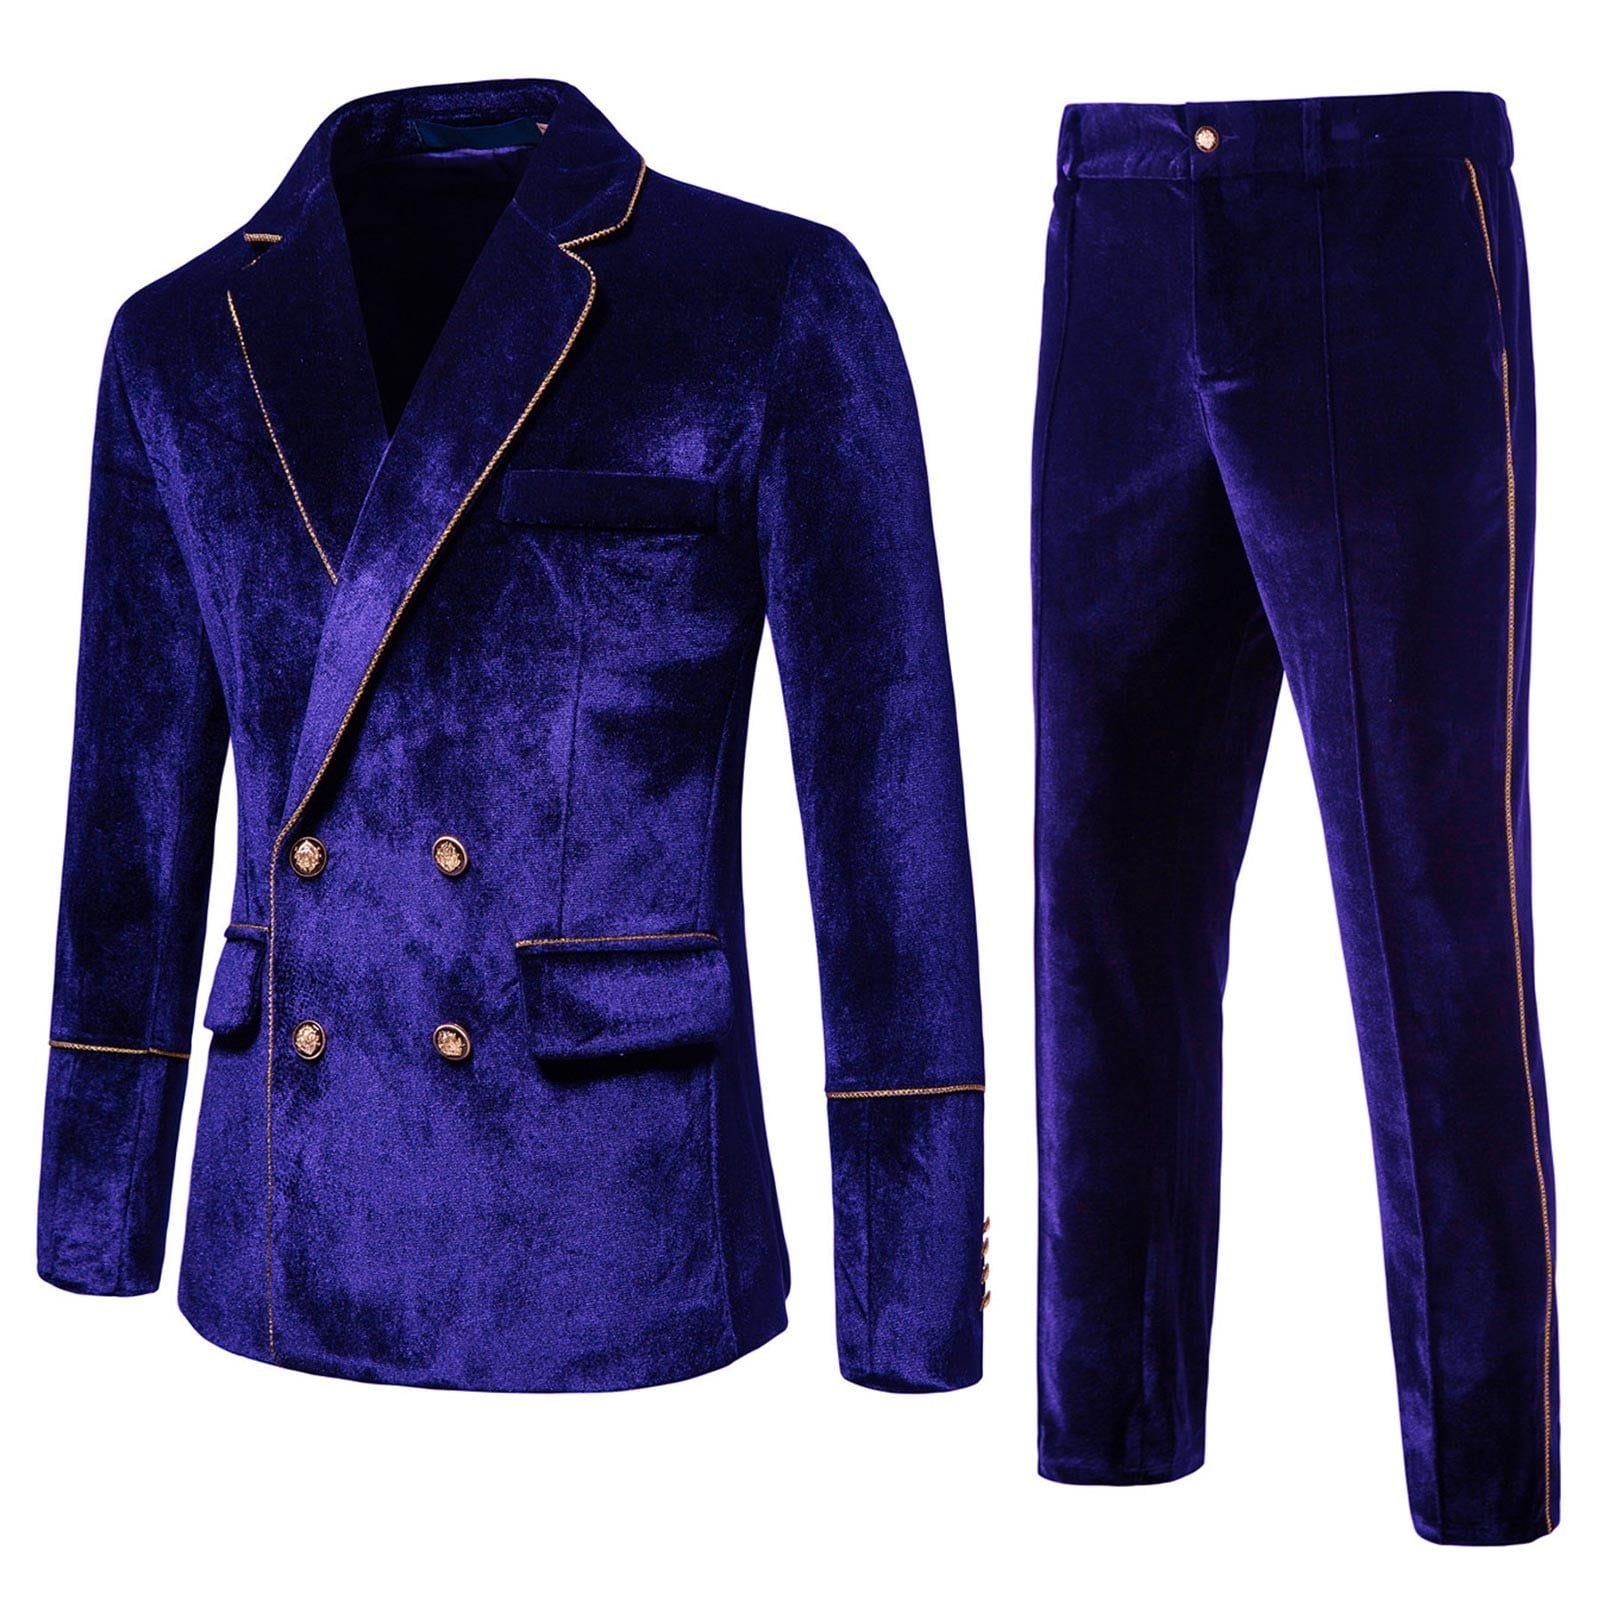 Blue Mens Suits Mens Autumn And Winter Fashion Casual Suits Honey Velvet Slim Double Solid Color Evening Dress Groomsmen Suit 4c76d1de 5865 4495 a981 99a6d931f5da.79fd0964e9b5b29eafe871267ab6a39f